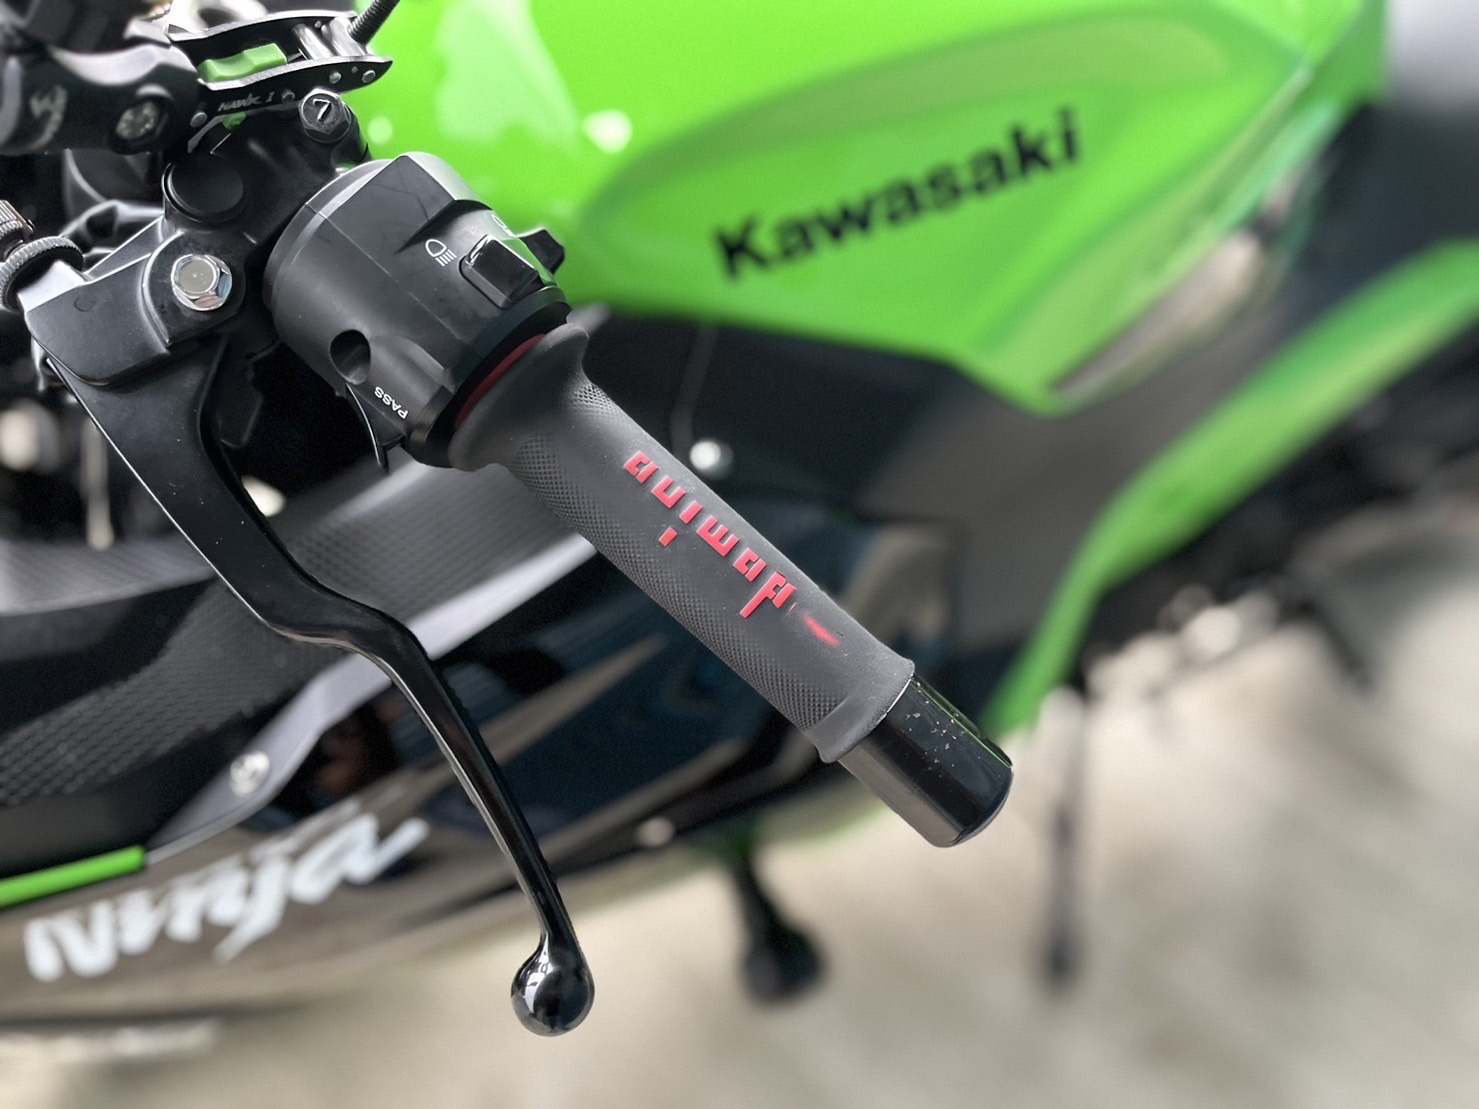 KAWASAKI NINJA400 - 中古/二手車出售中 改裝排氣管 行車記錄器 W!ZH腳踏後移 小資族二手重機買賣 | 小資族二手重機買賣